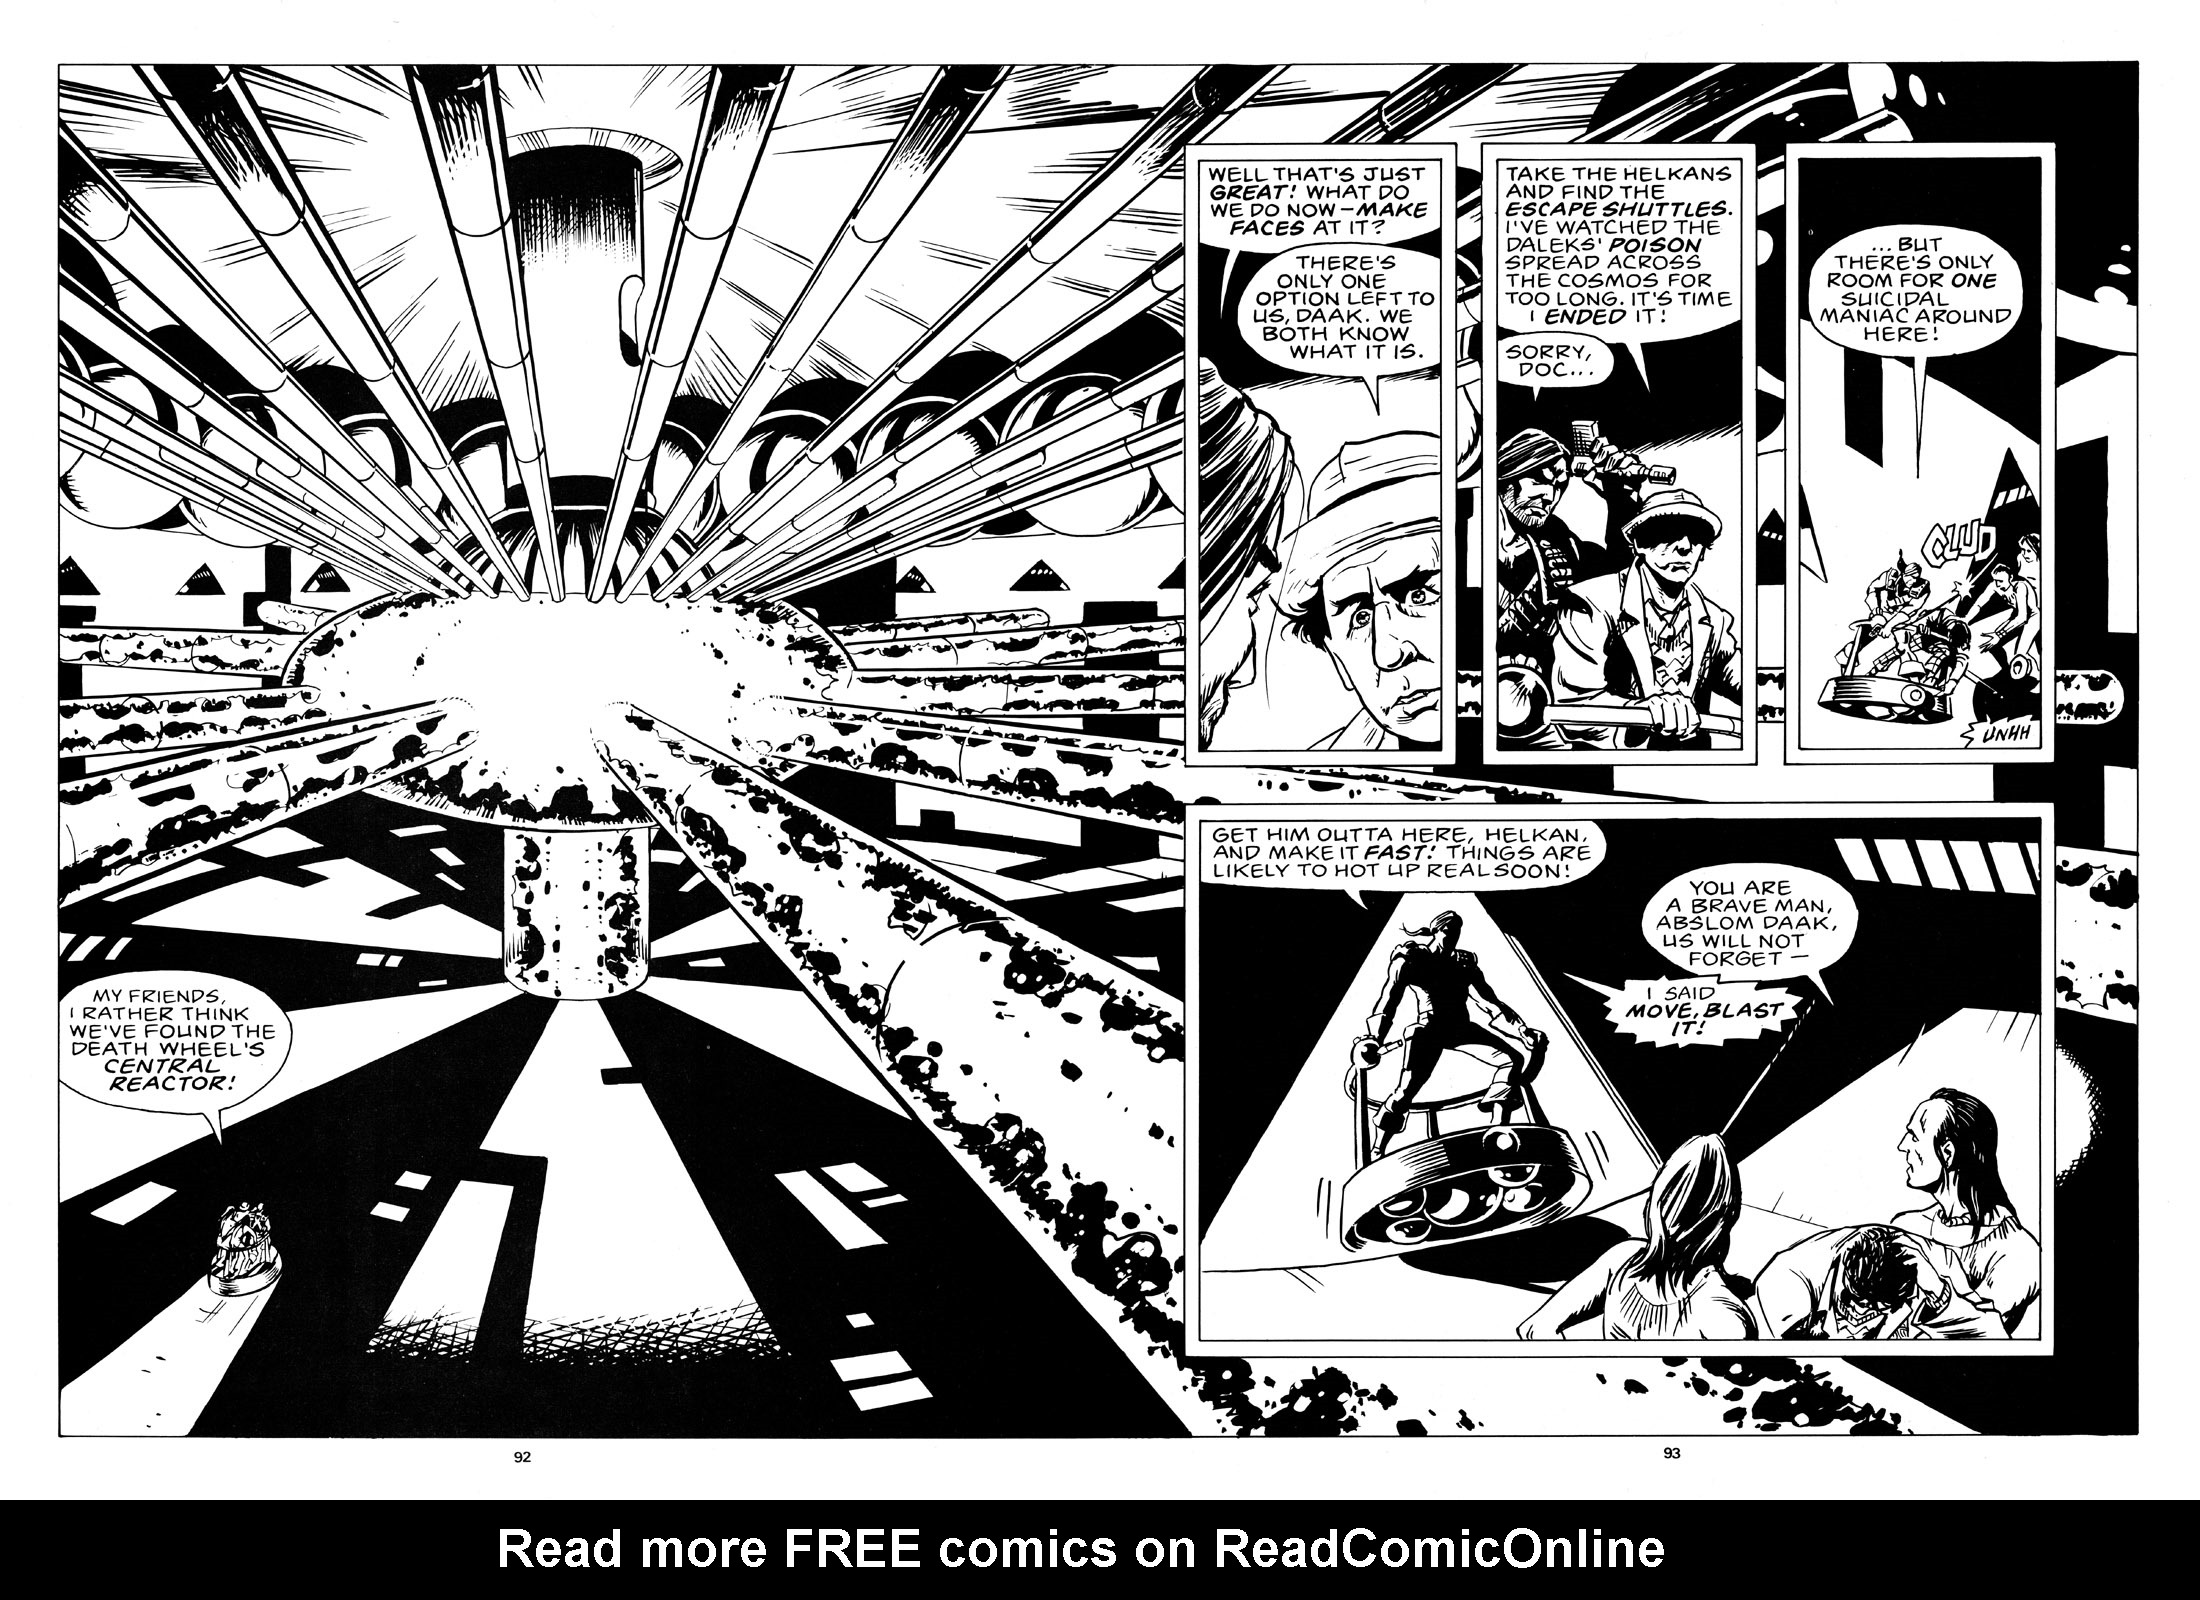 Read online Marvel Graphic Novel comic -  Issue #4 Abslom Daak, Dalek Killer - 87